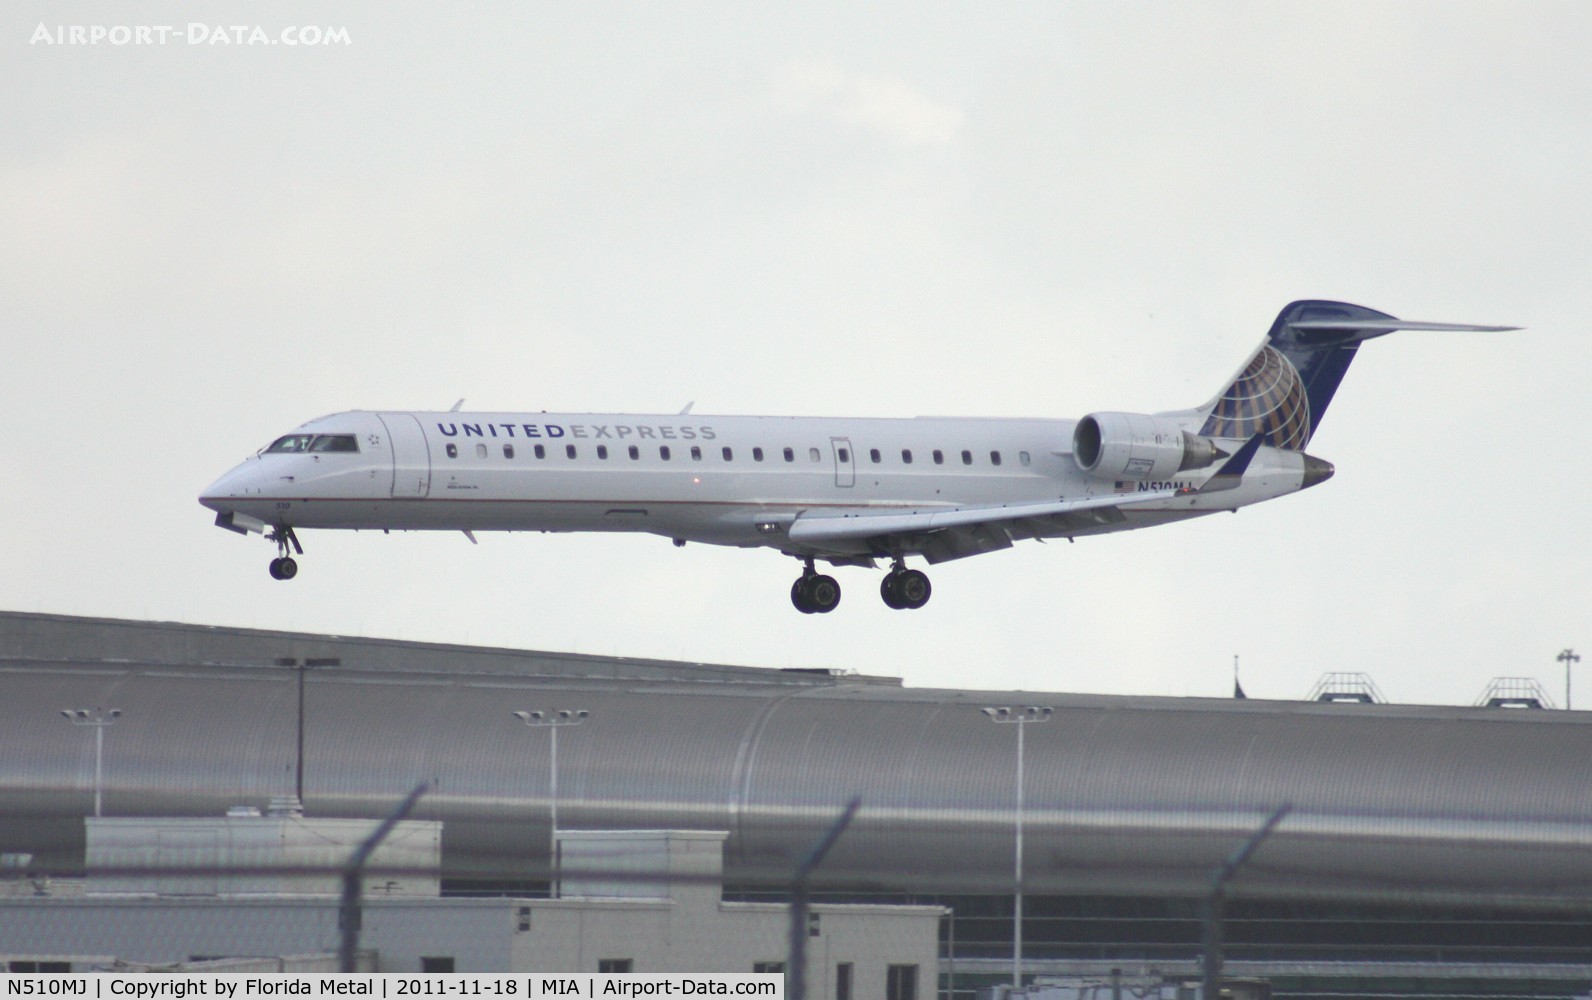 N510MJ, 2003 Bombardier CRJ-700 (CL-600-2C10) Regional Jet C/N 10101, United Express new colors CRJ-700 landing Runway 30